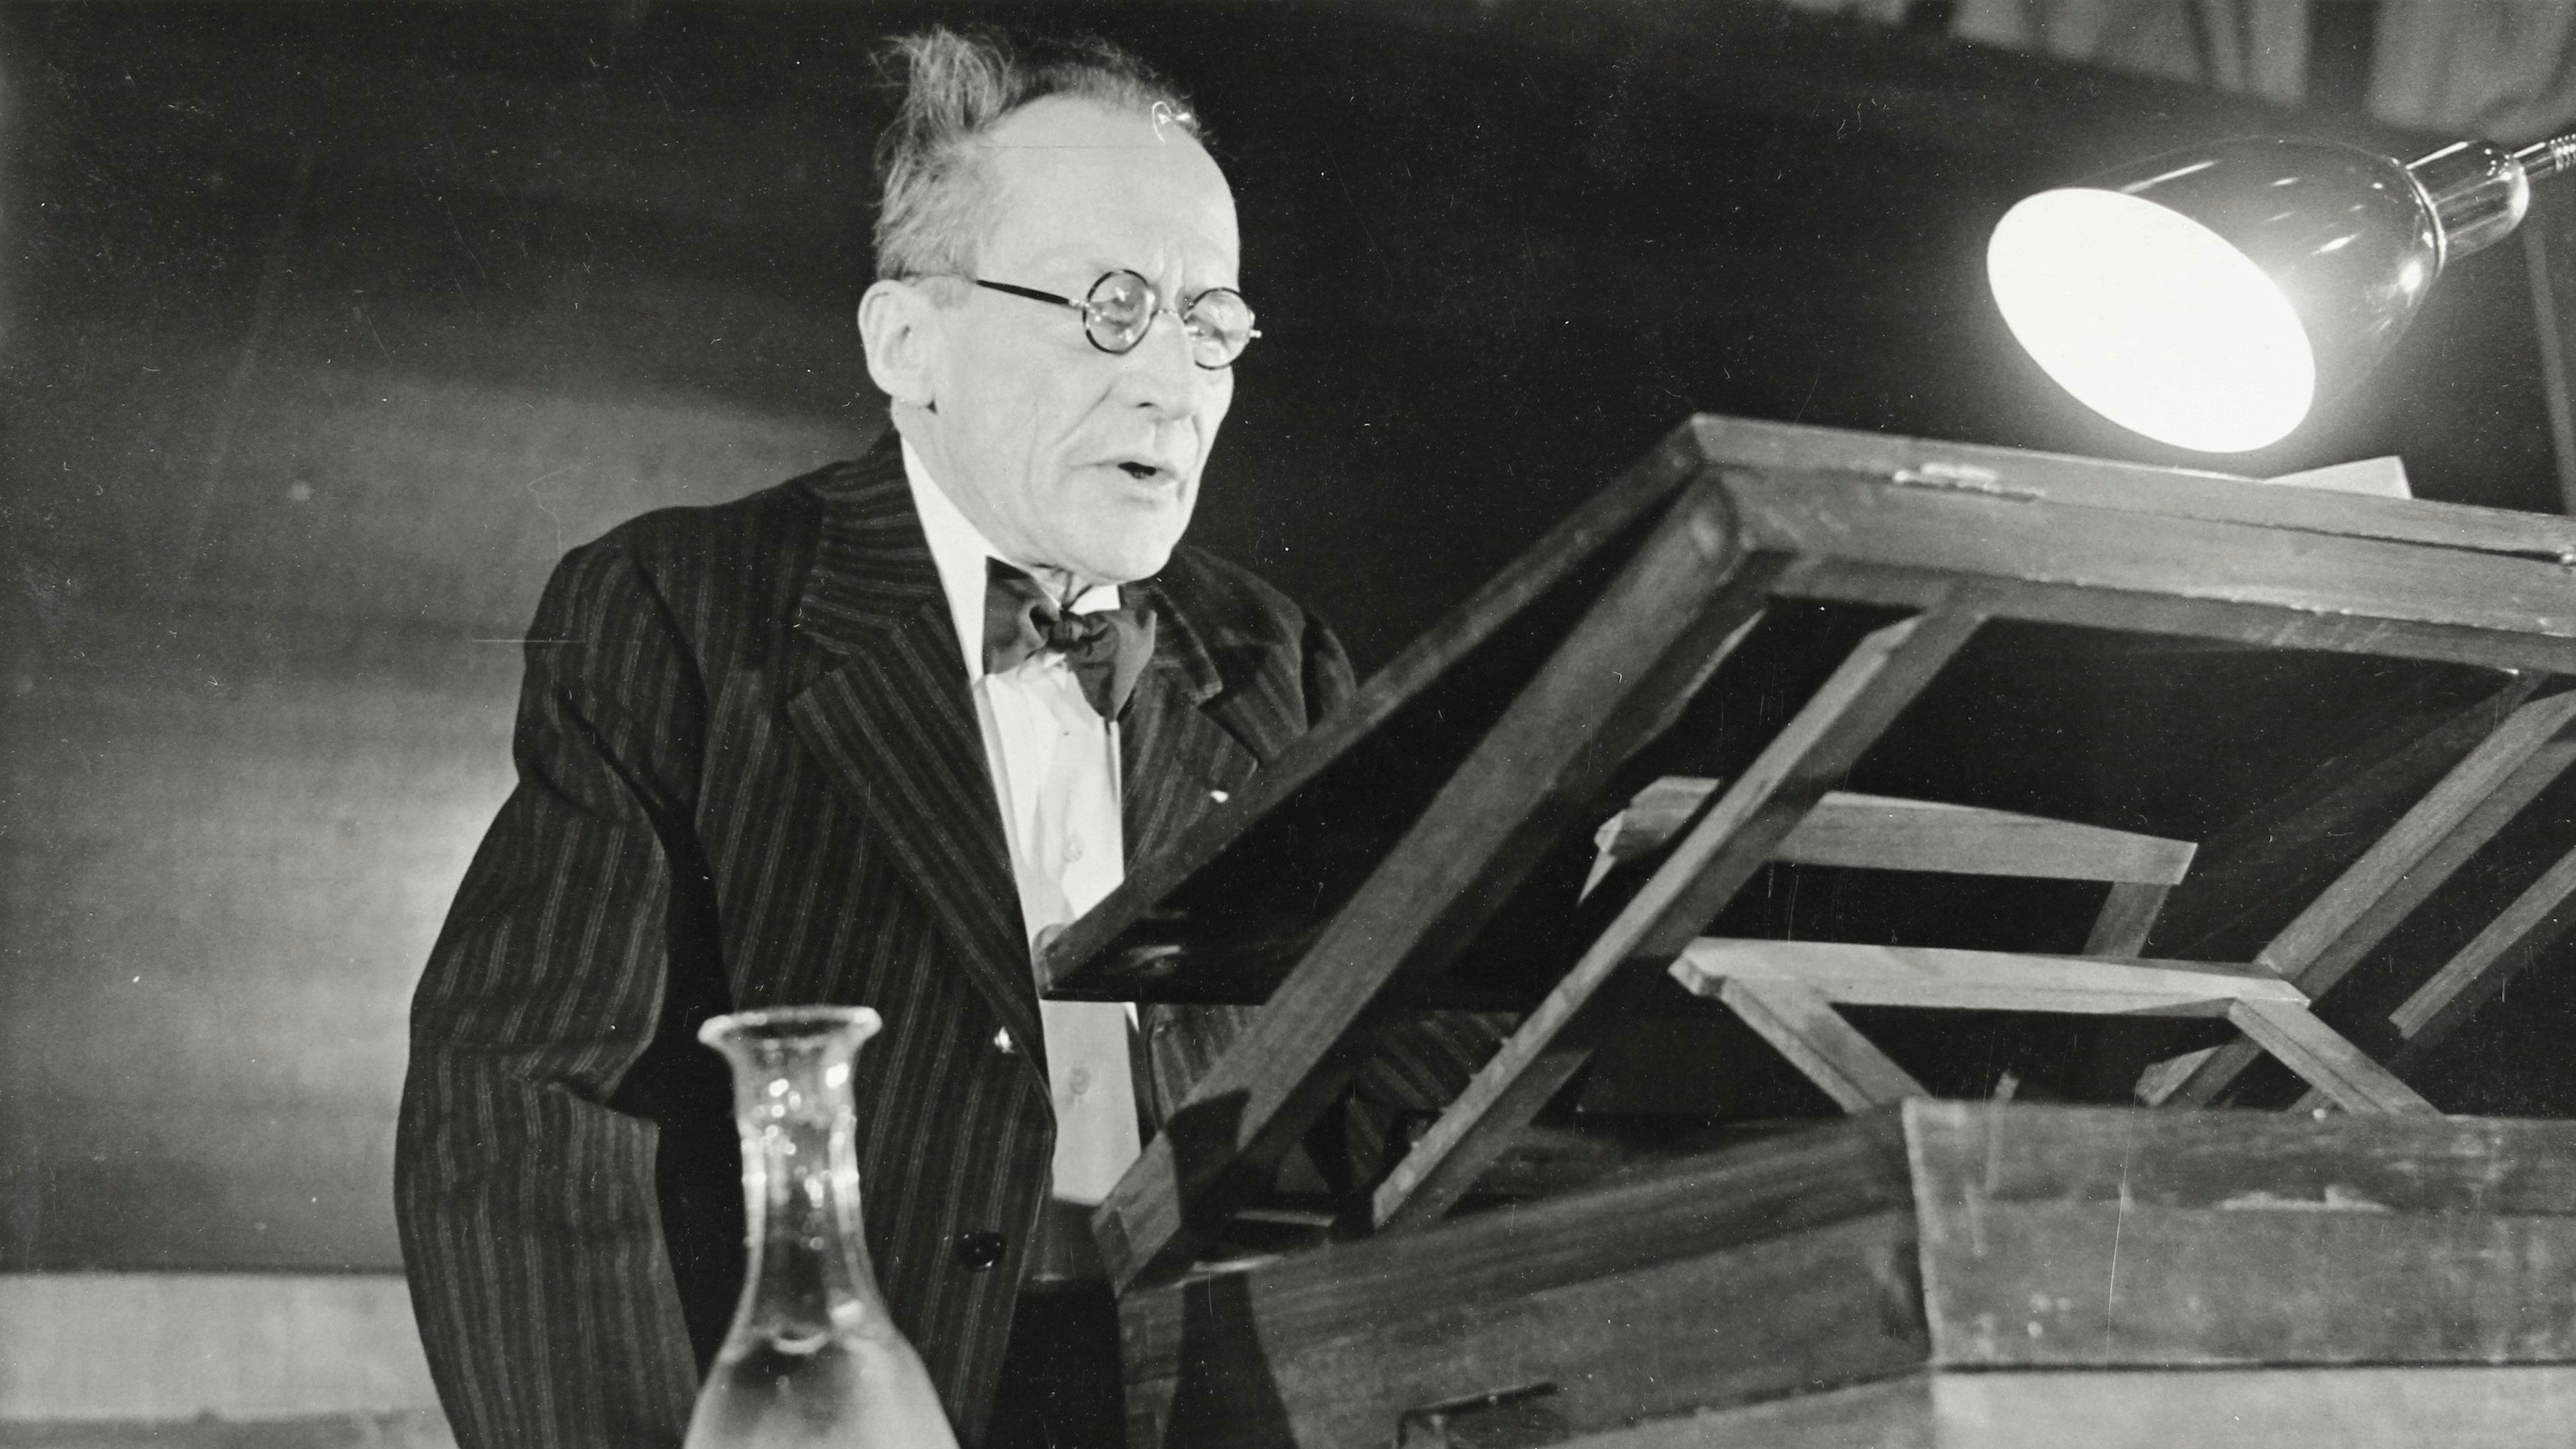 Der österreichische Pysiker Erwin Schrödinger bei seiner Antrittsvorlesung an der Universität Wien am 13. April 1956